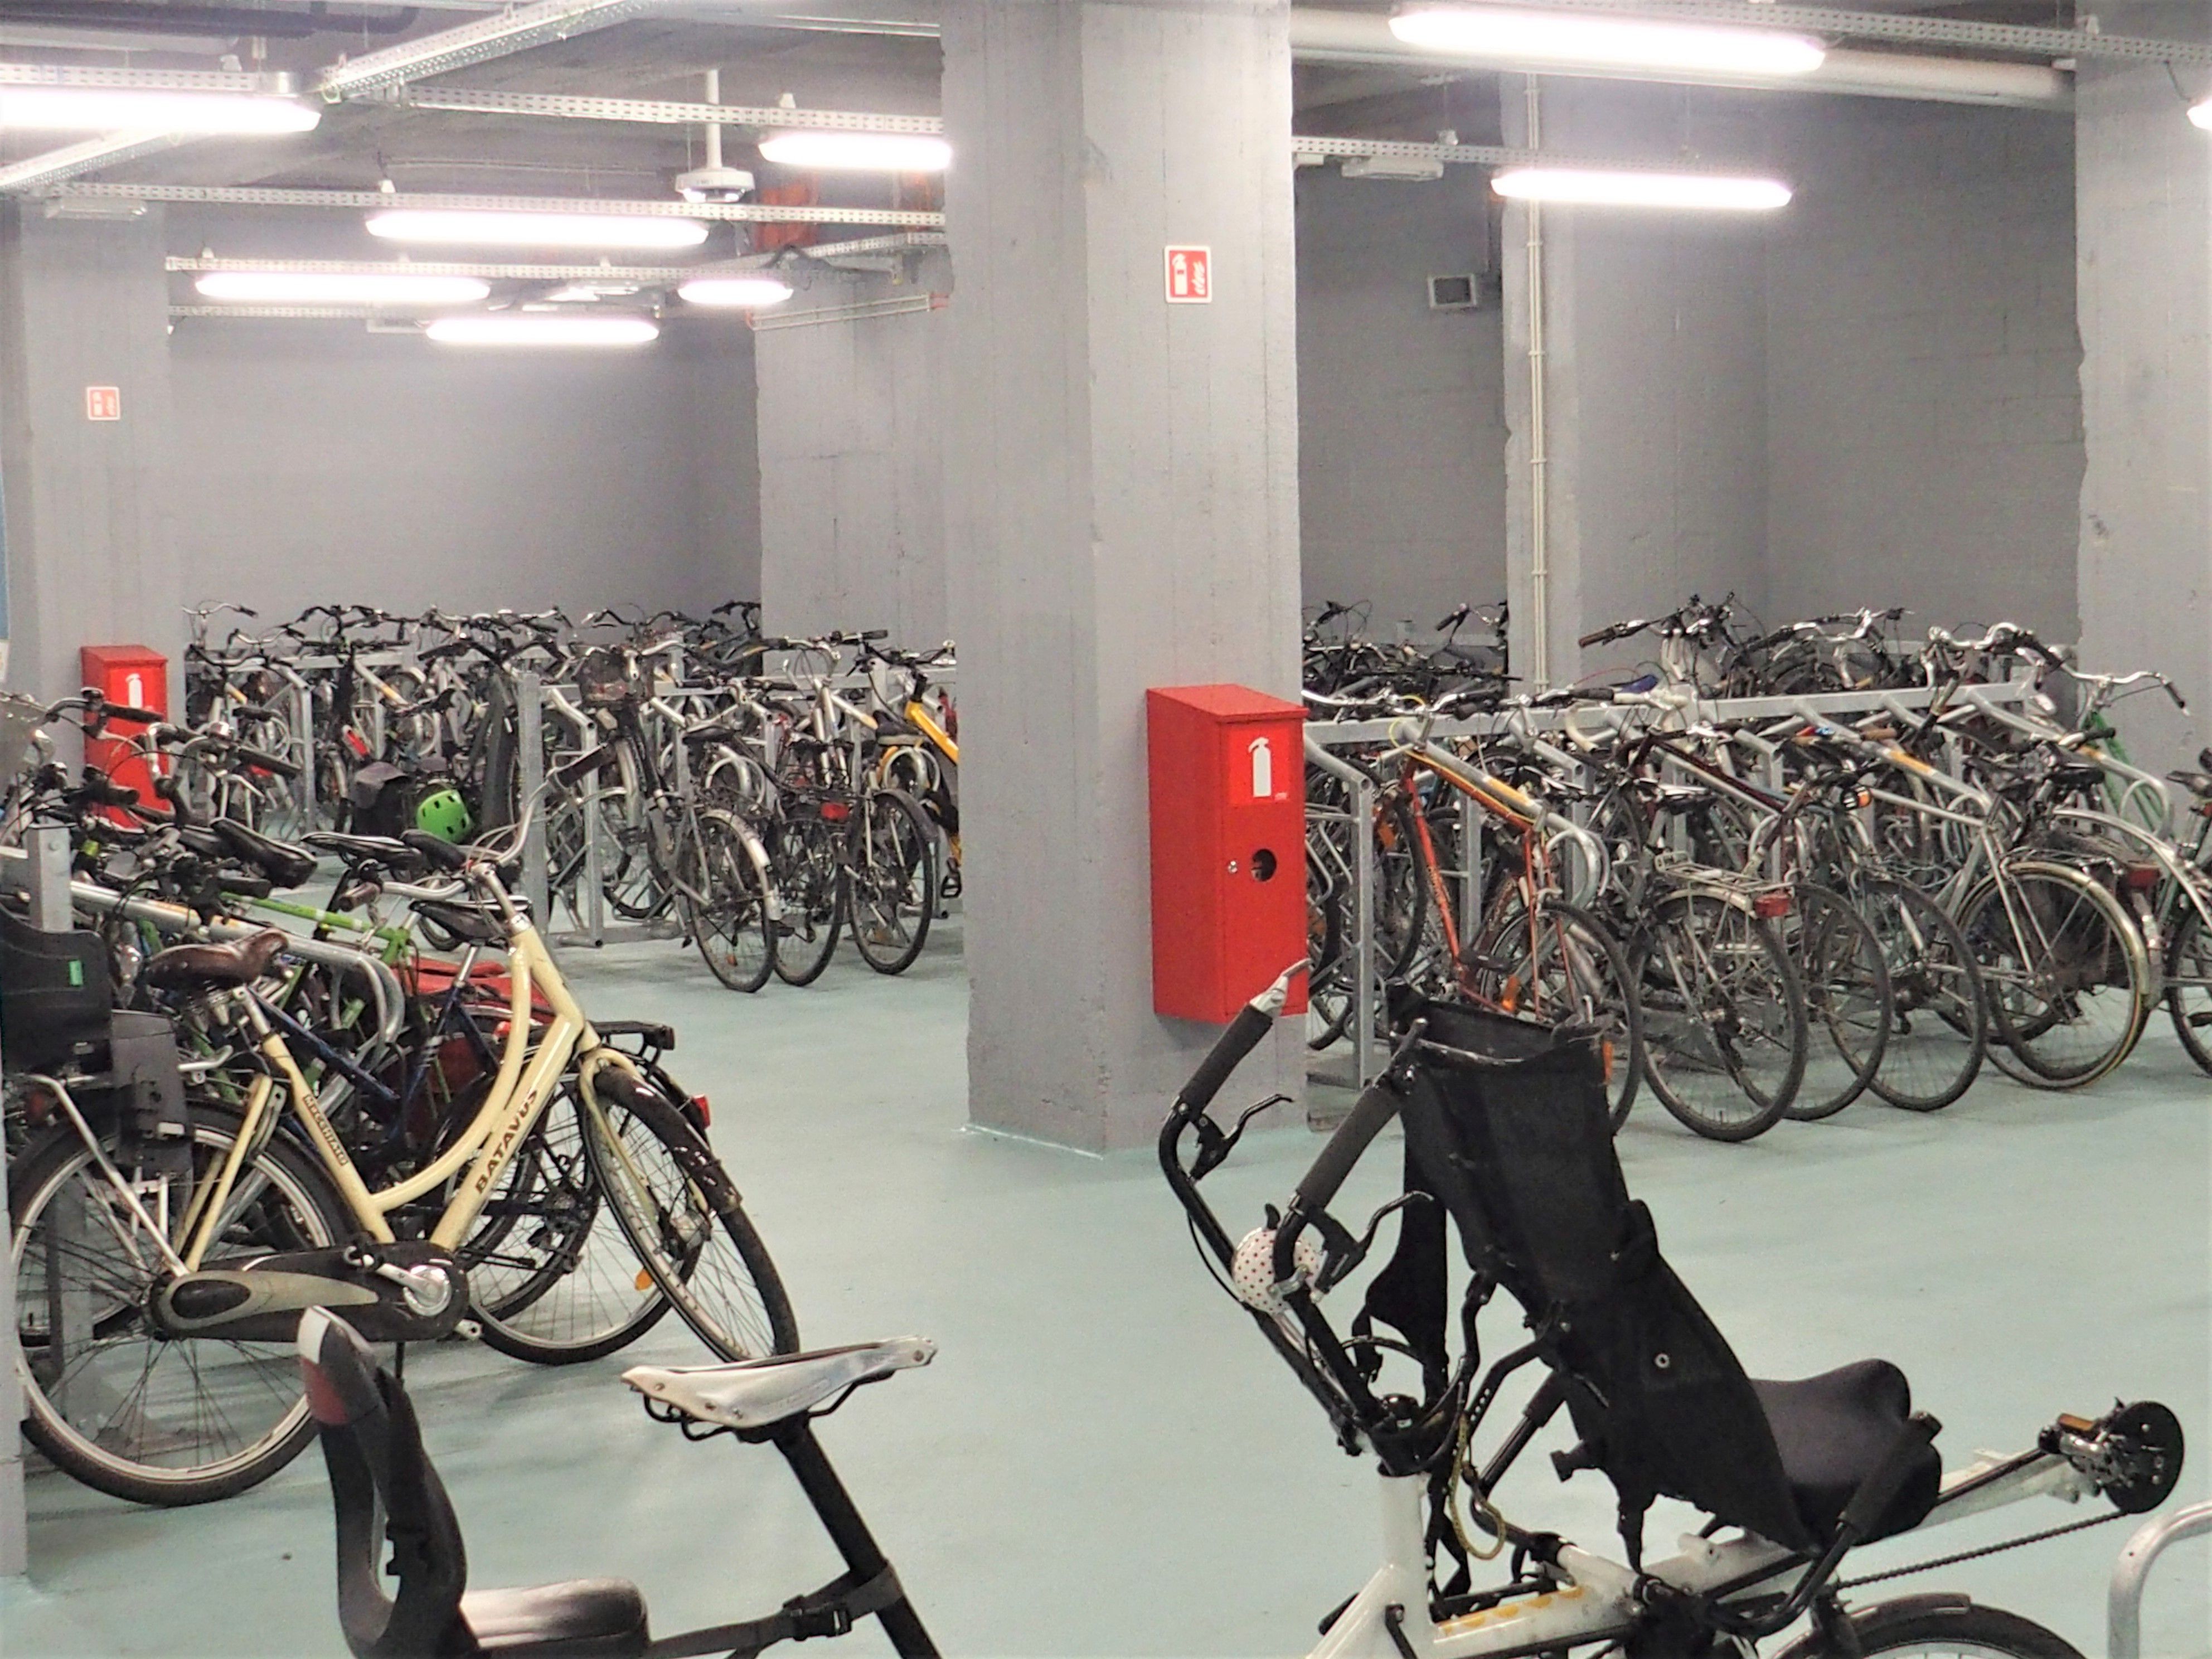 Le nouveau parking pour vélos élargi est très facile d'accès depuis le hall de gare via les escalators et les ascenseurs